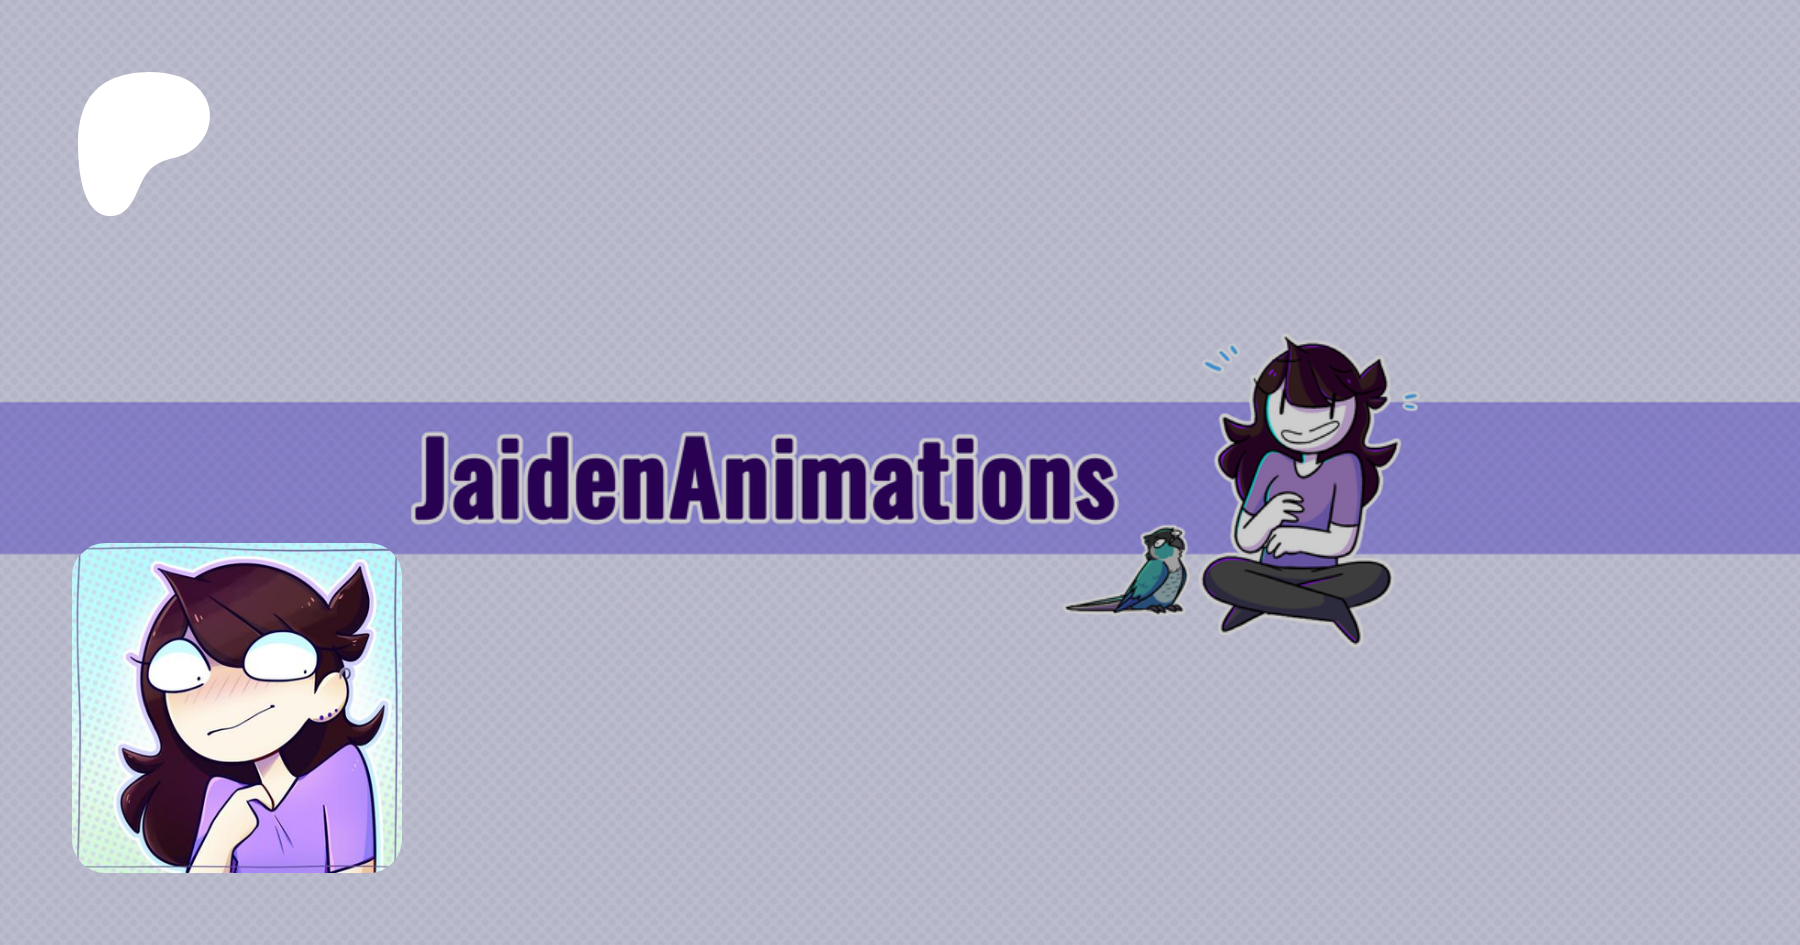 JaidenAnimations, creating Animations